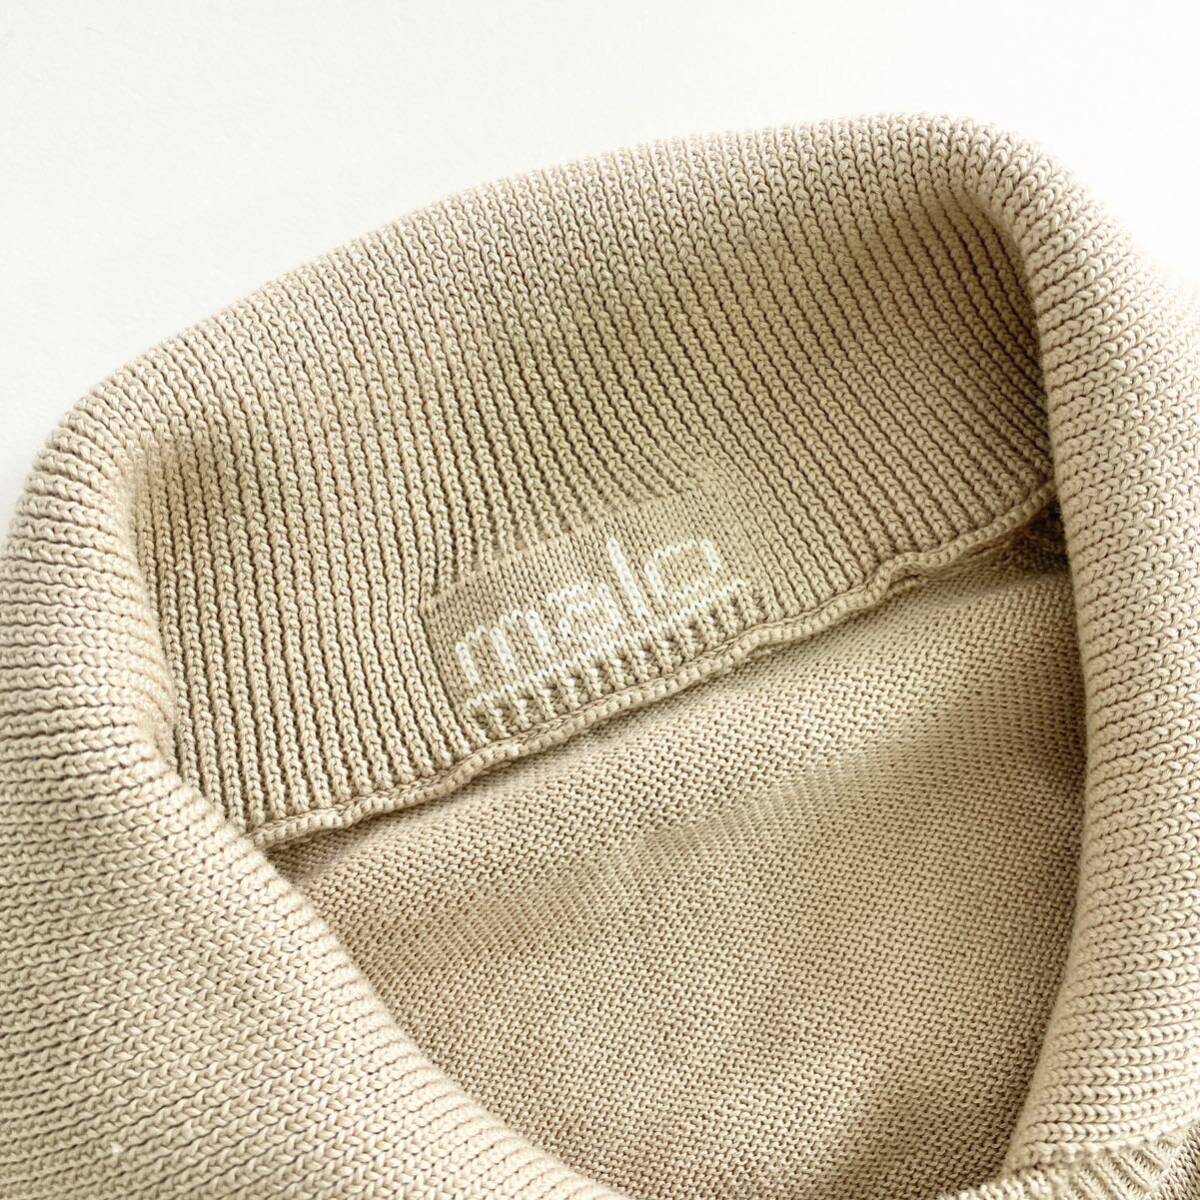 Xd25{ прекрасный товар } Италия производства maloma-ro вязаный свитер вязаный рубашка накладывающийся надеты способ бежевый хлопок вязаный 48 M размер соответствует мужской джентльмен одежда 